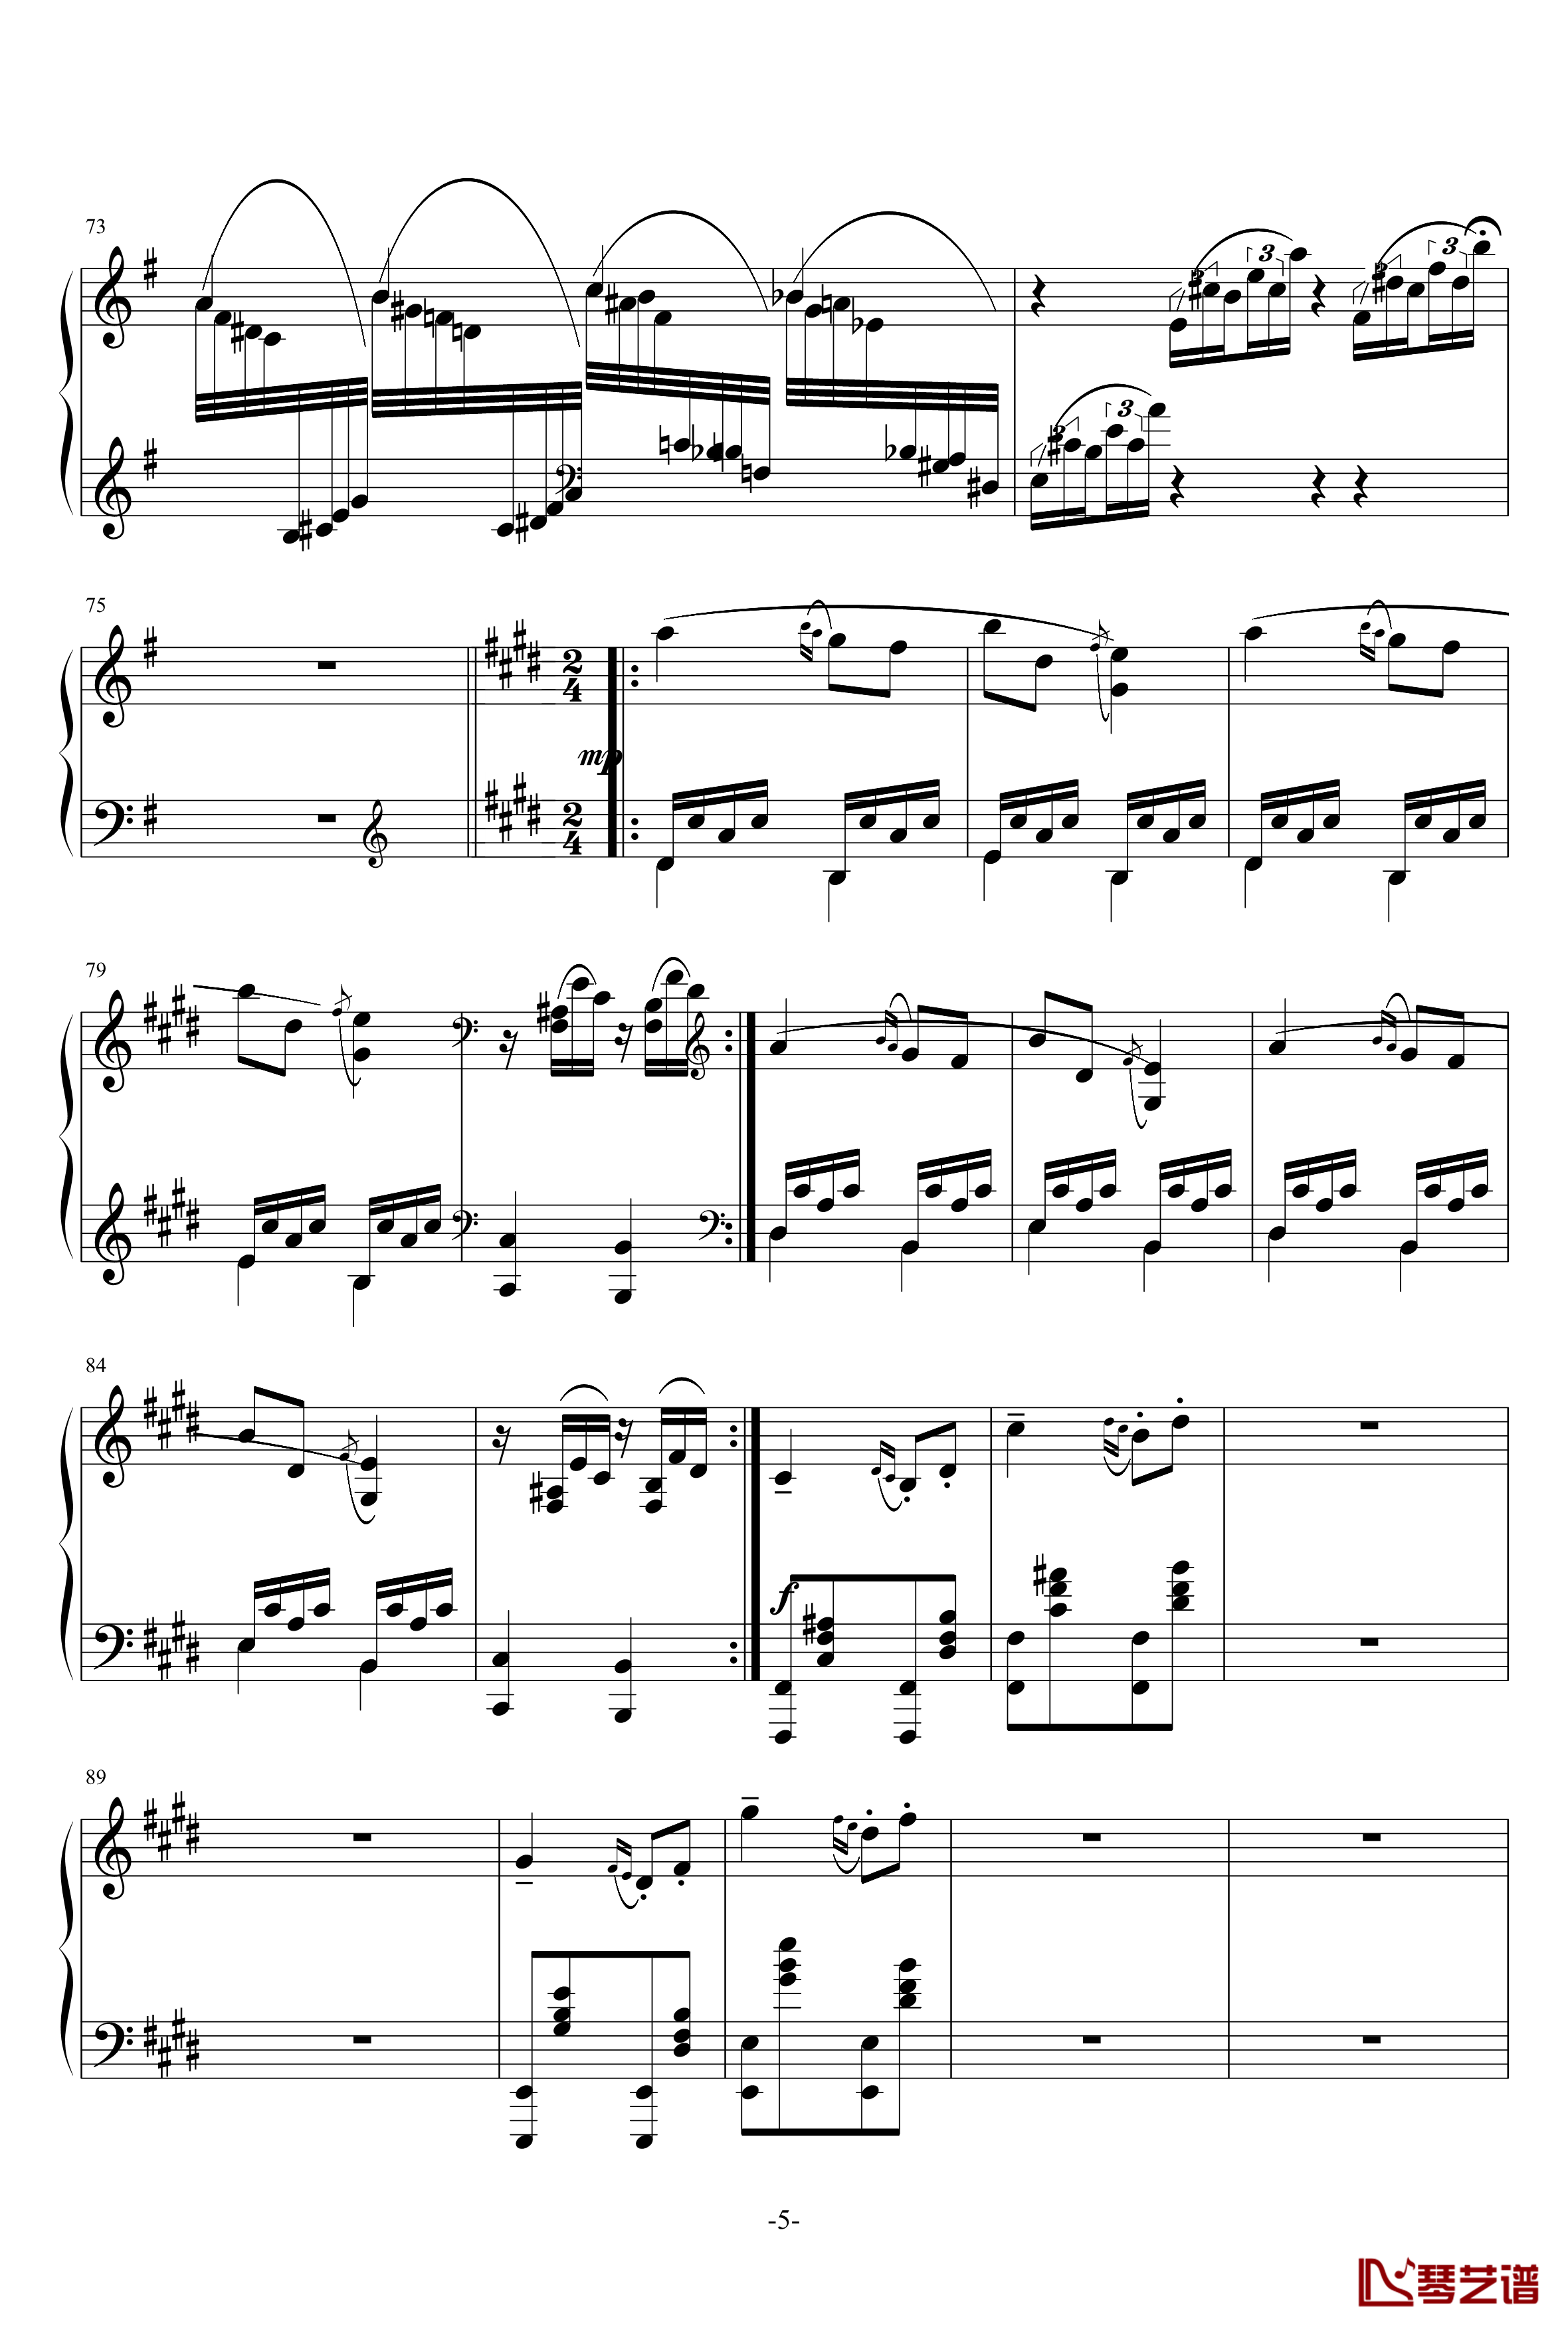 小温狂想曲 3钢琴谱—具有匈牙利狂想曲风格的一曲。—我的代表作-一个球5